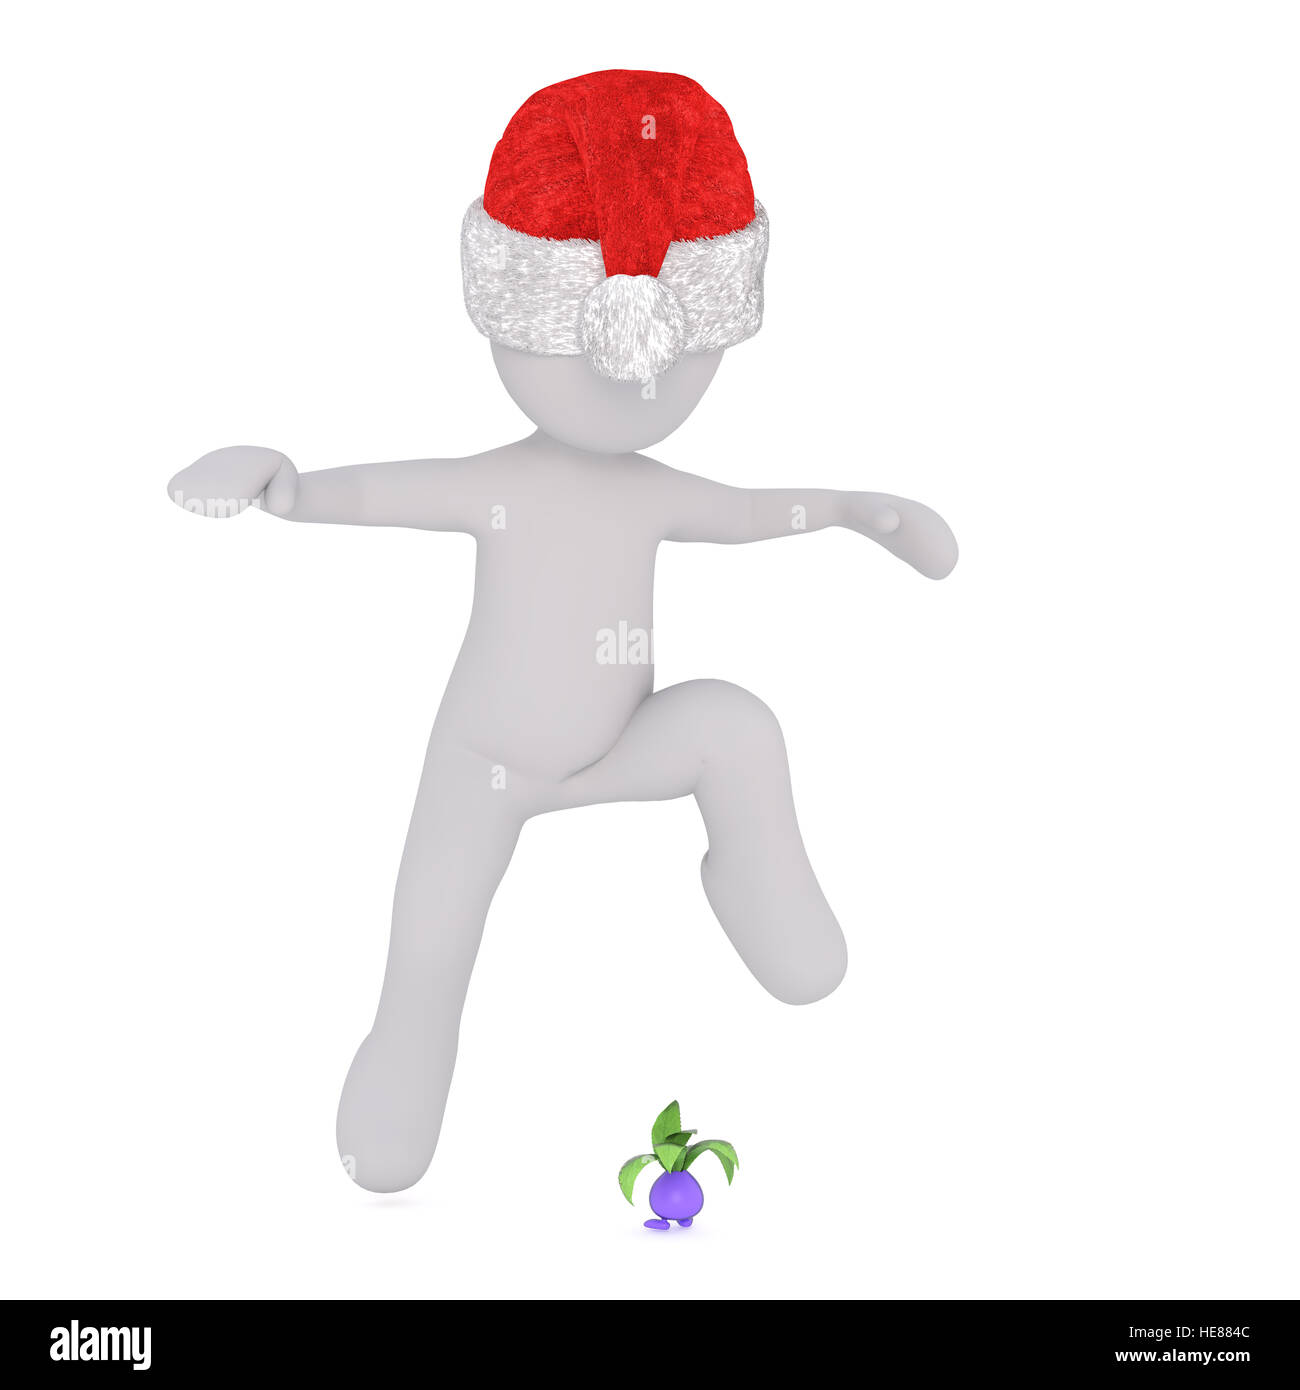 Full body 3d toon figure in Santa hat avoiding small virus character jumping over, white background Stock Photo